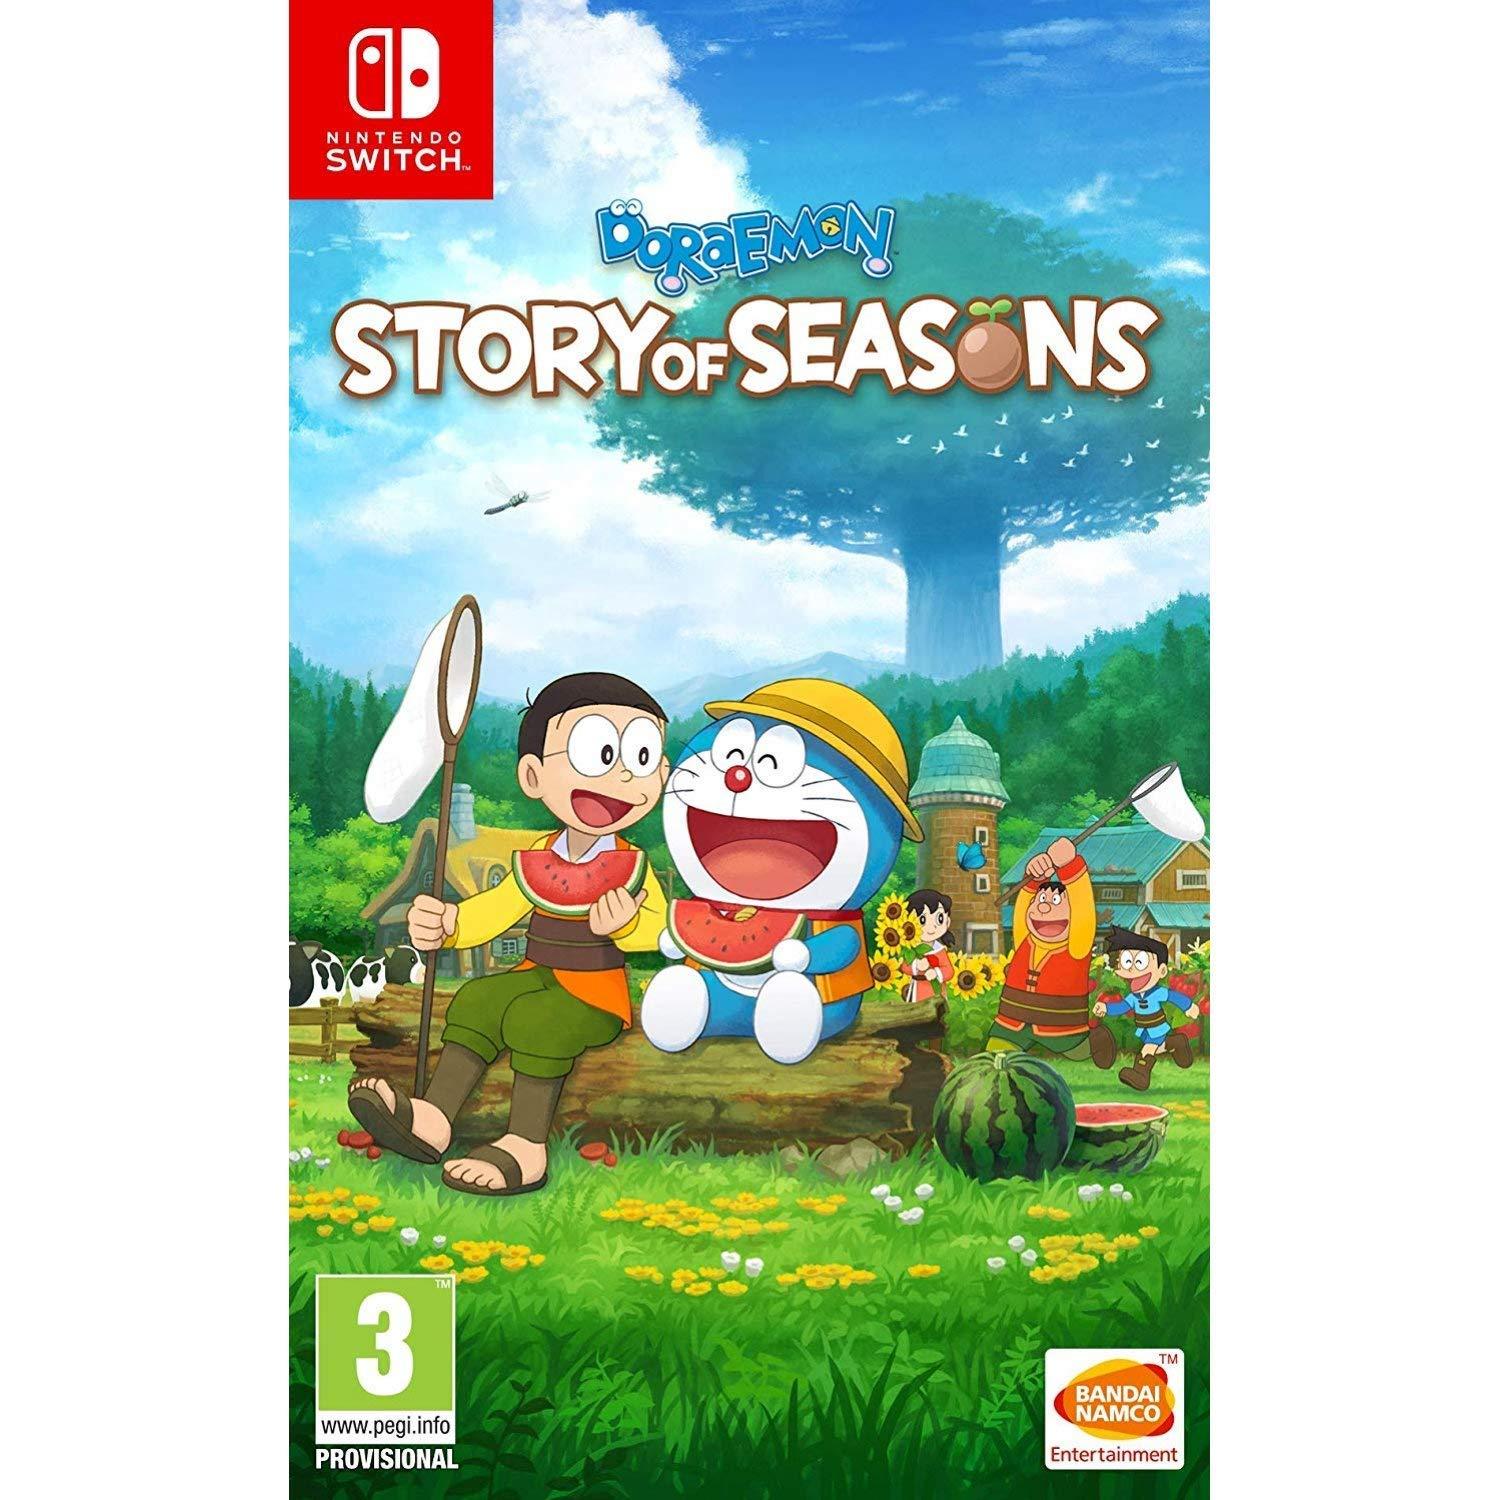 Doraemon Story of Seasons Nintendo Switch for $12.49